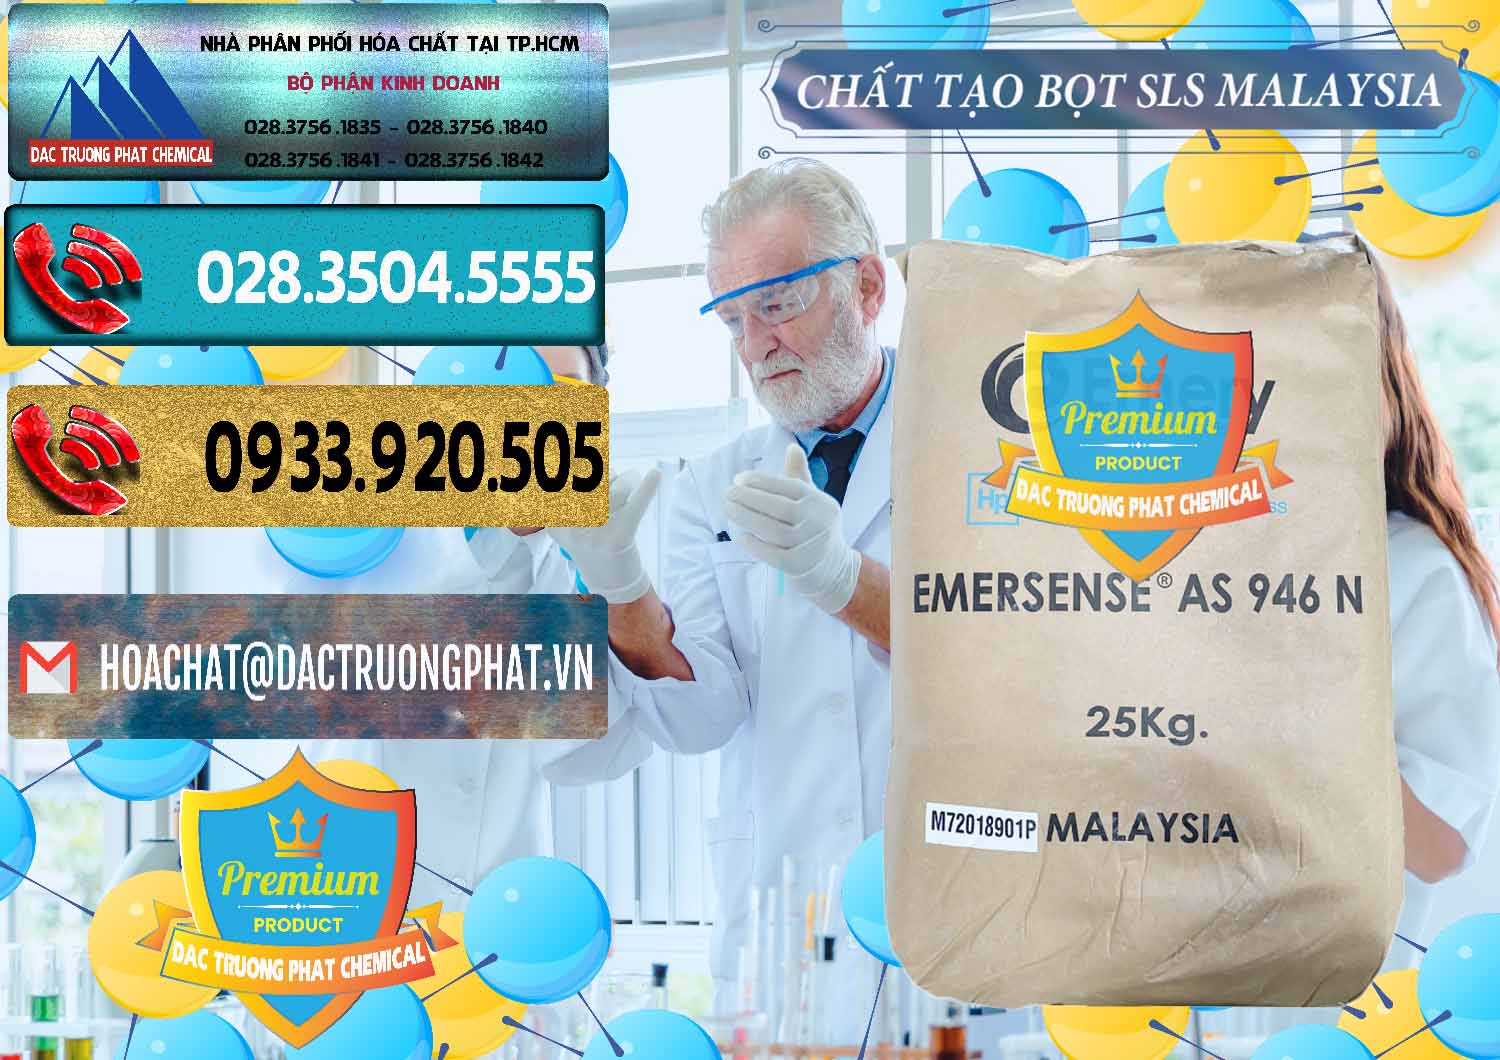 Bán & cung cấp Chất Tạo Bọt SLS Emery - Emersense AS 946N Mã Lai Malaysia - 0423 - Công ty chuyên kinh doanh & cung cấp hóa chất tại TP.HCM - hoachatdetnhuom.com